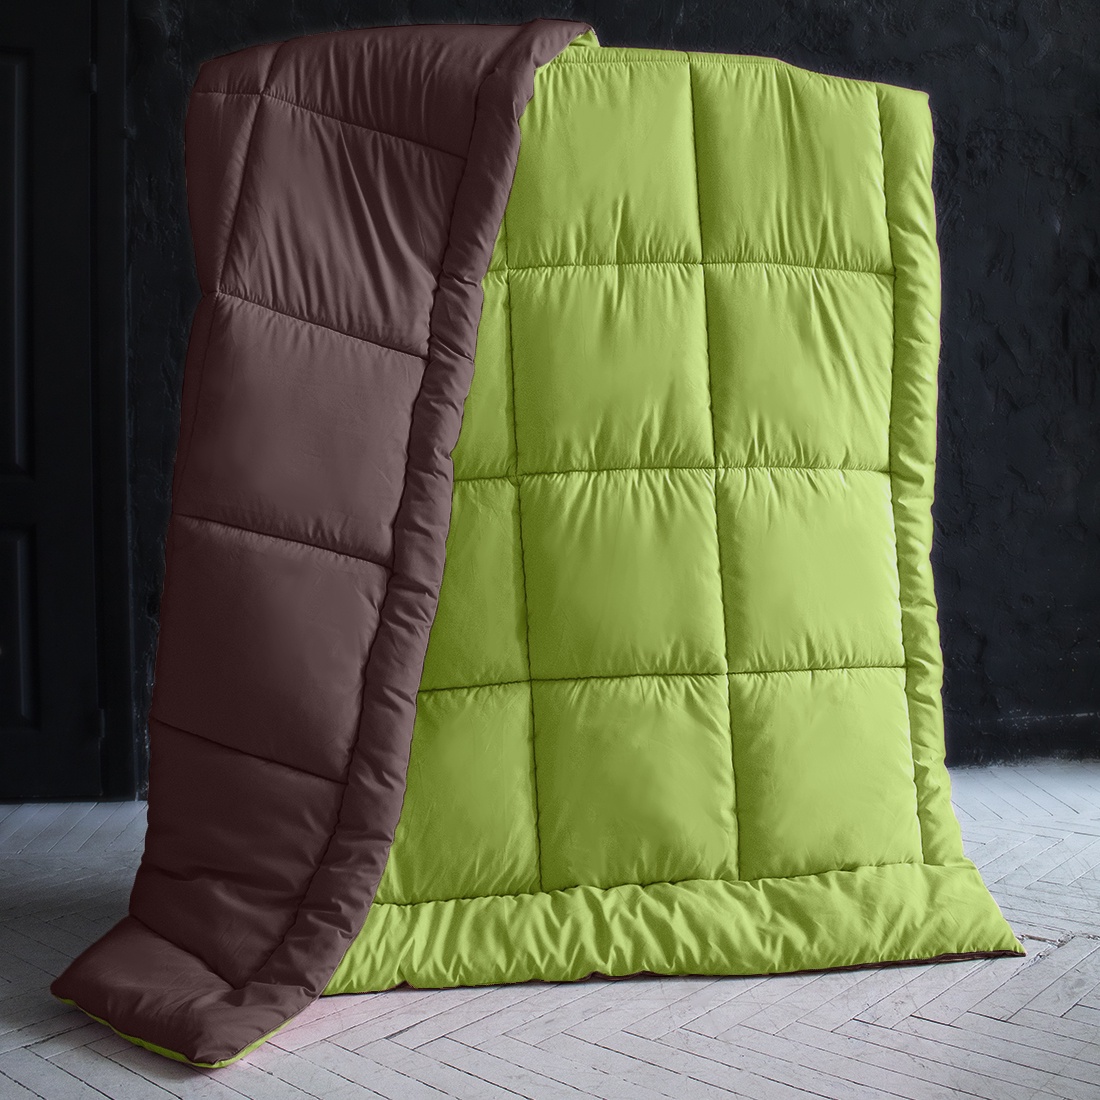 фото Одеяло "SleepiX", Мультиколор, цвет: темно-коричневый, салатовый, 220х240 см Sleep ix